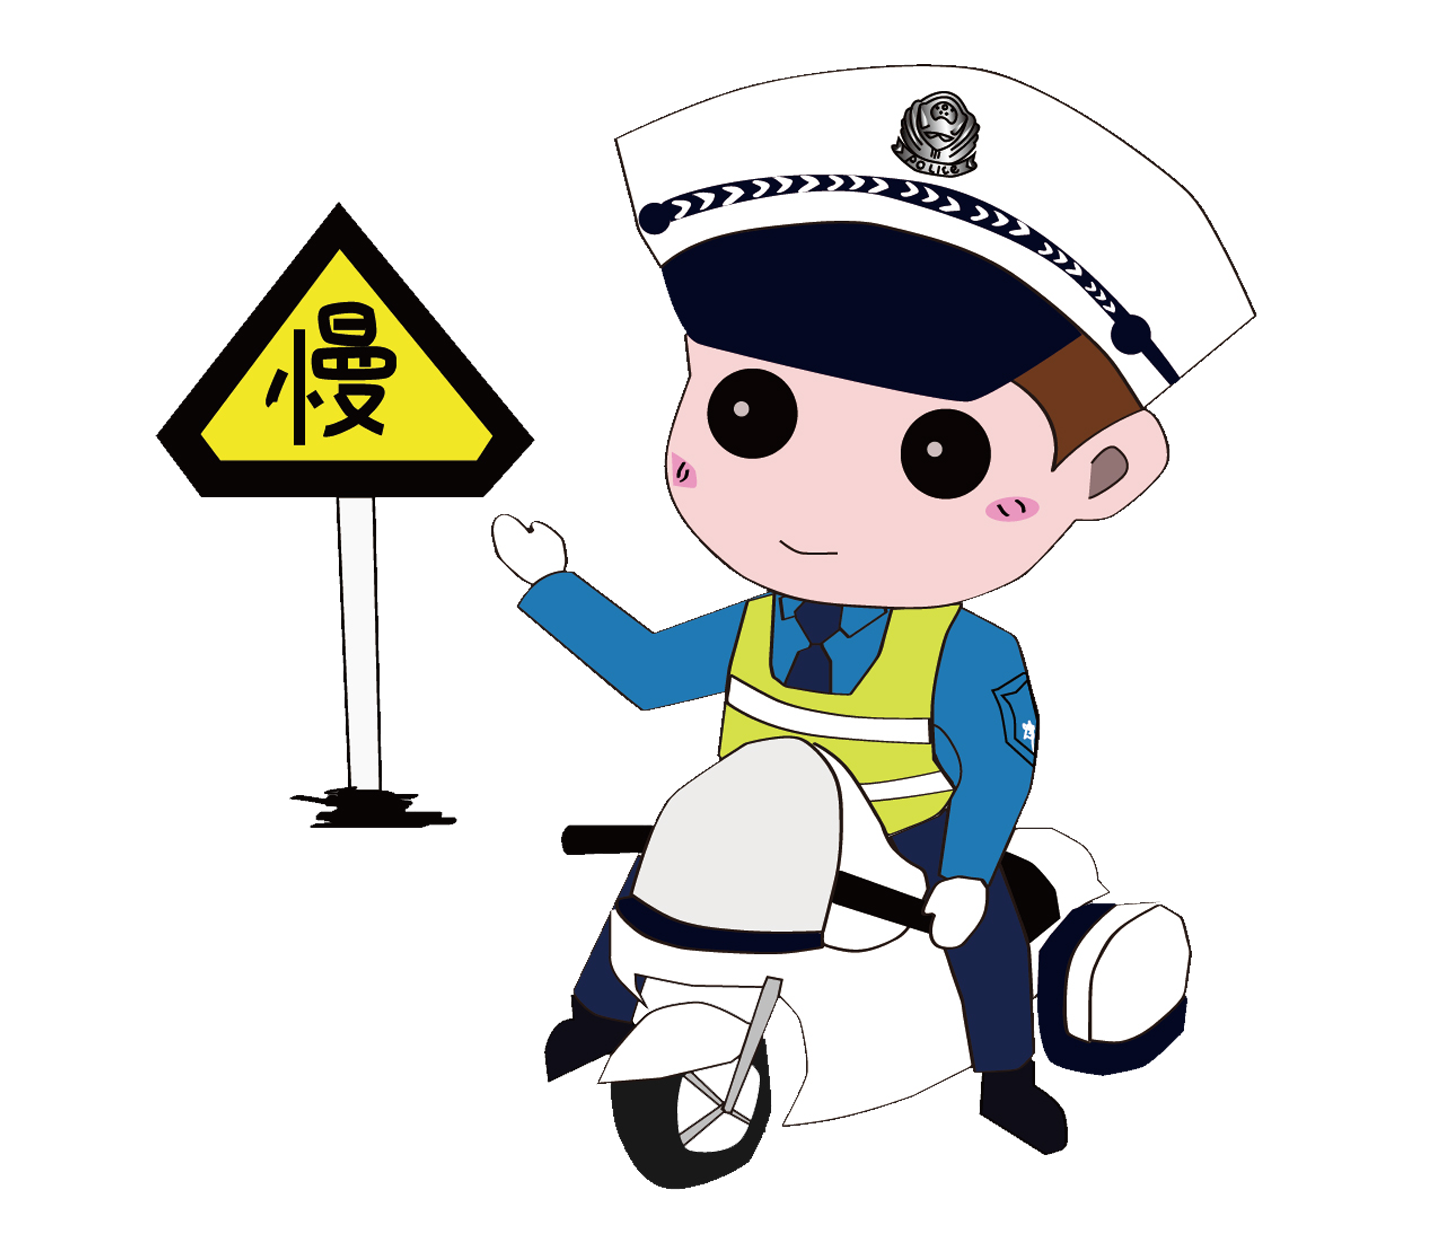 Traffic Police Officer Clip Art